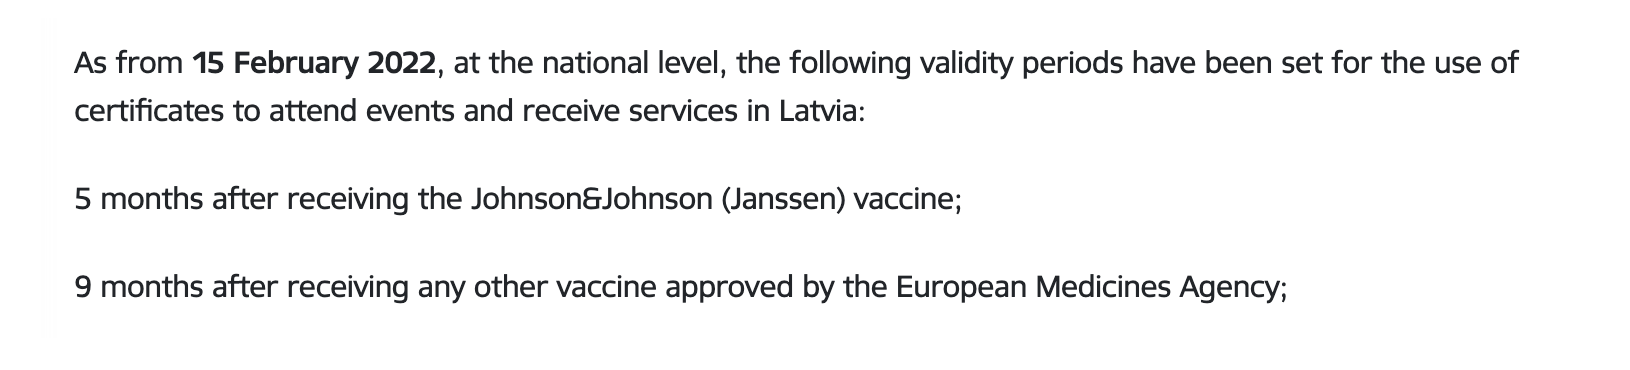 Правила действия европейских сертификатов для посещения общественных мест в Латвии с 15 февраля. Источник: mfa.gov.lv